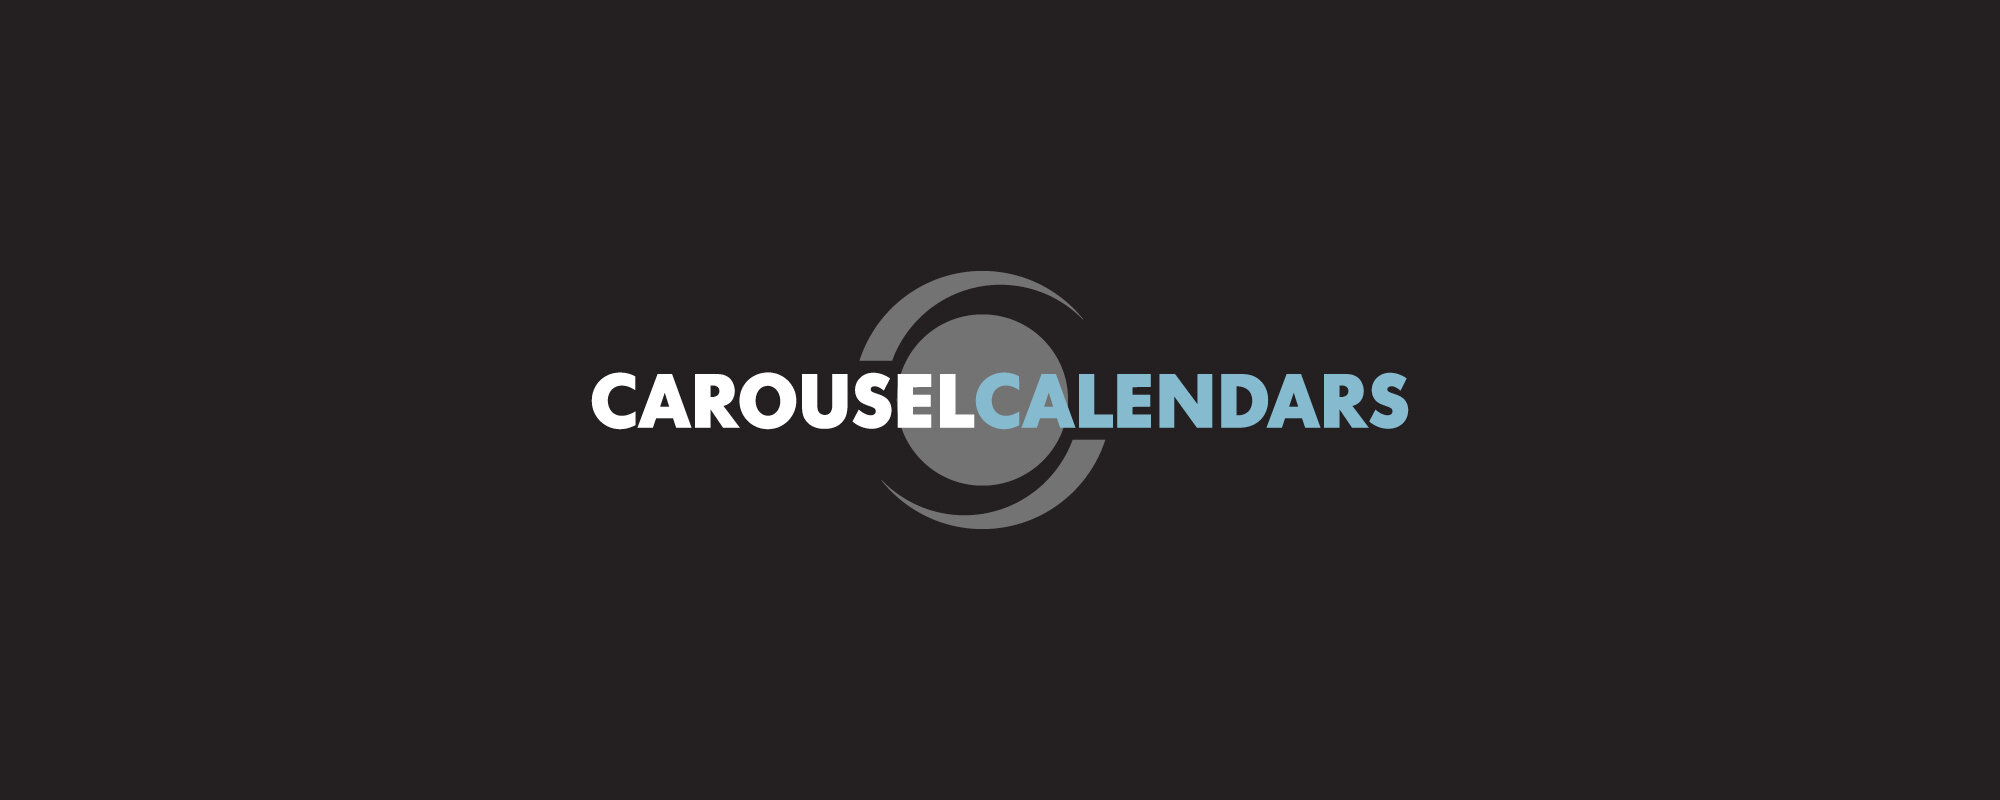 Carousel Calendars - Cover Image.jpg